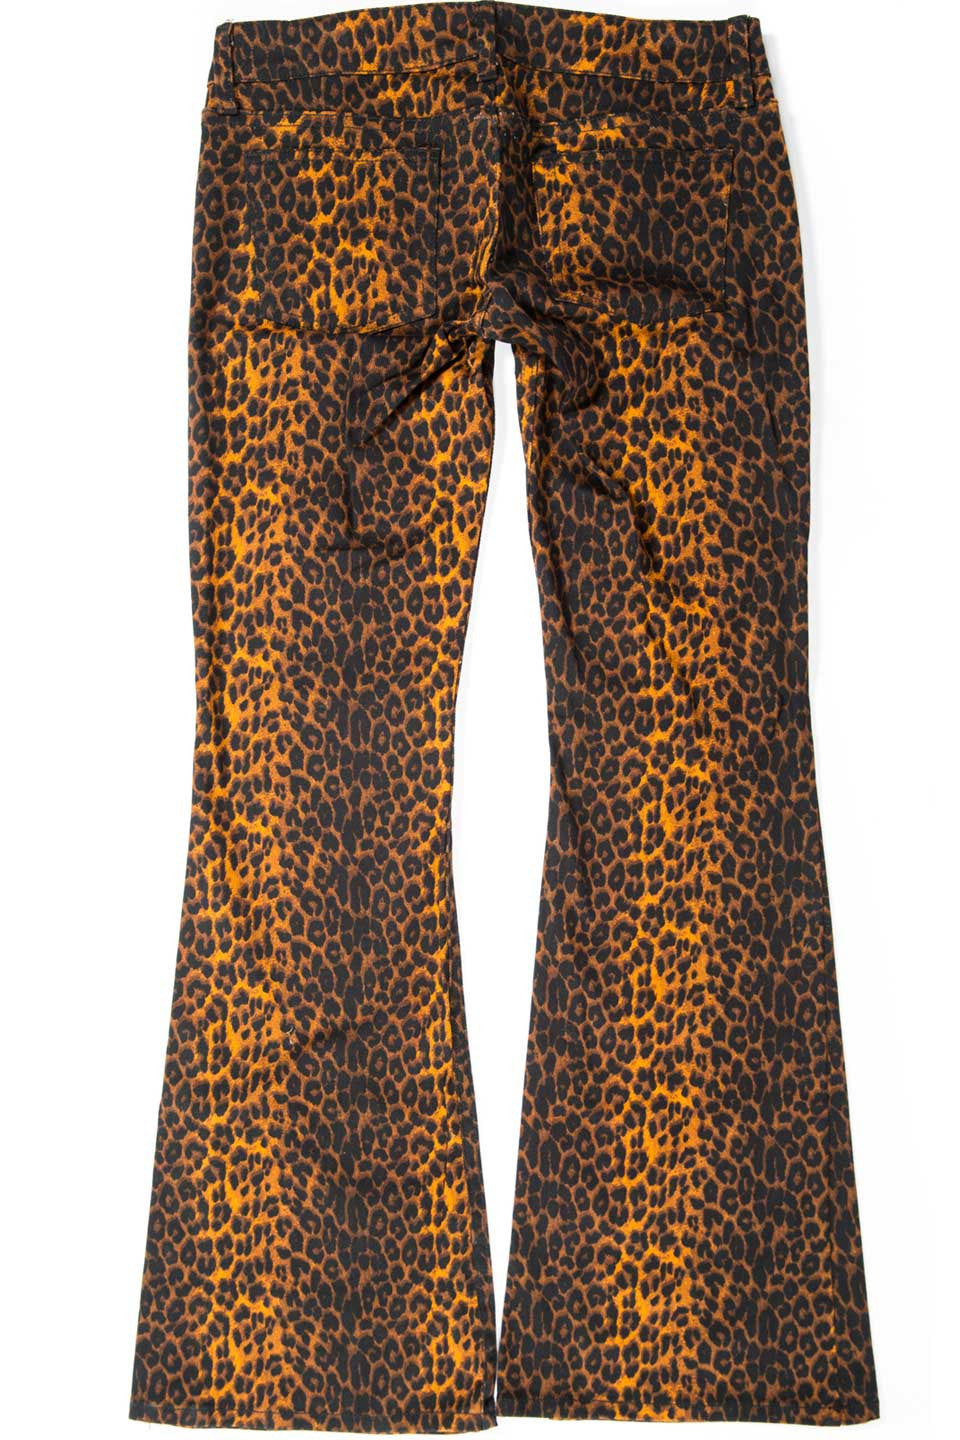 Vintage Leopard Boot Cut Jeans-Jeans-Lip Service